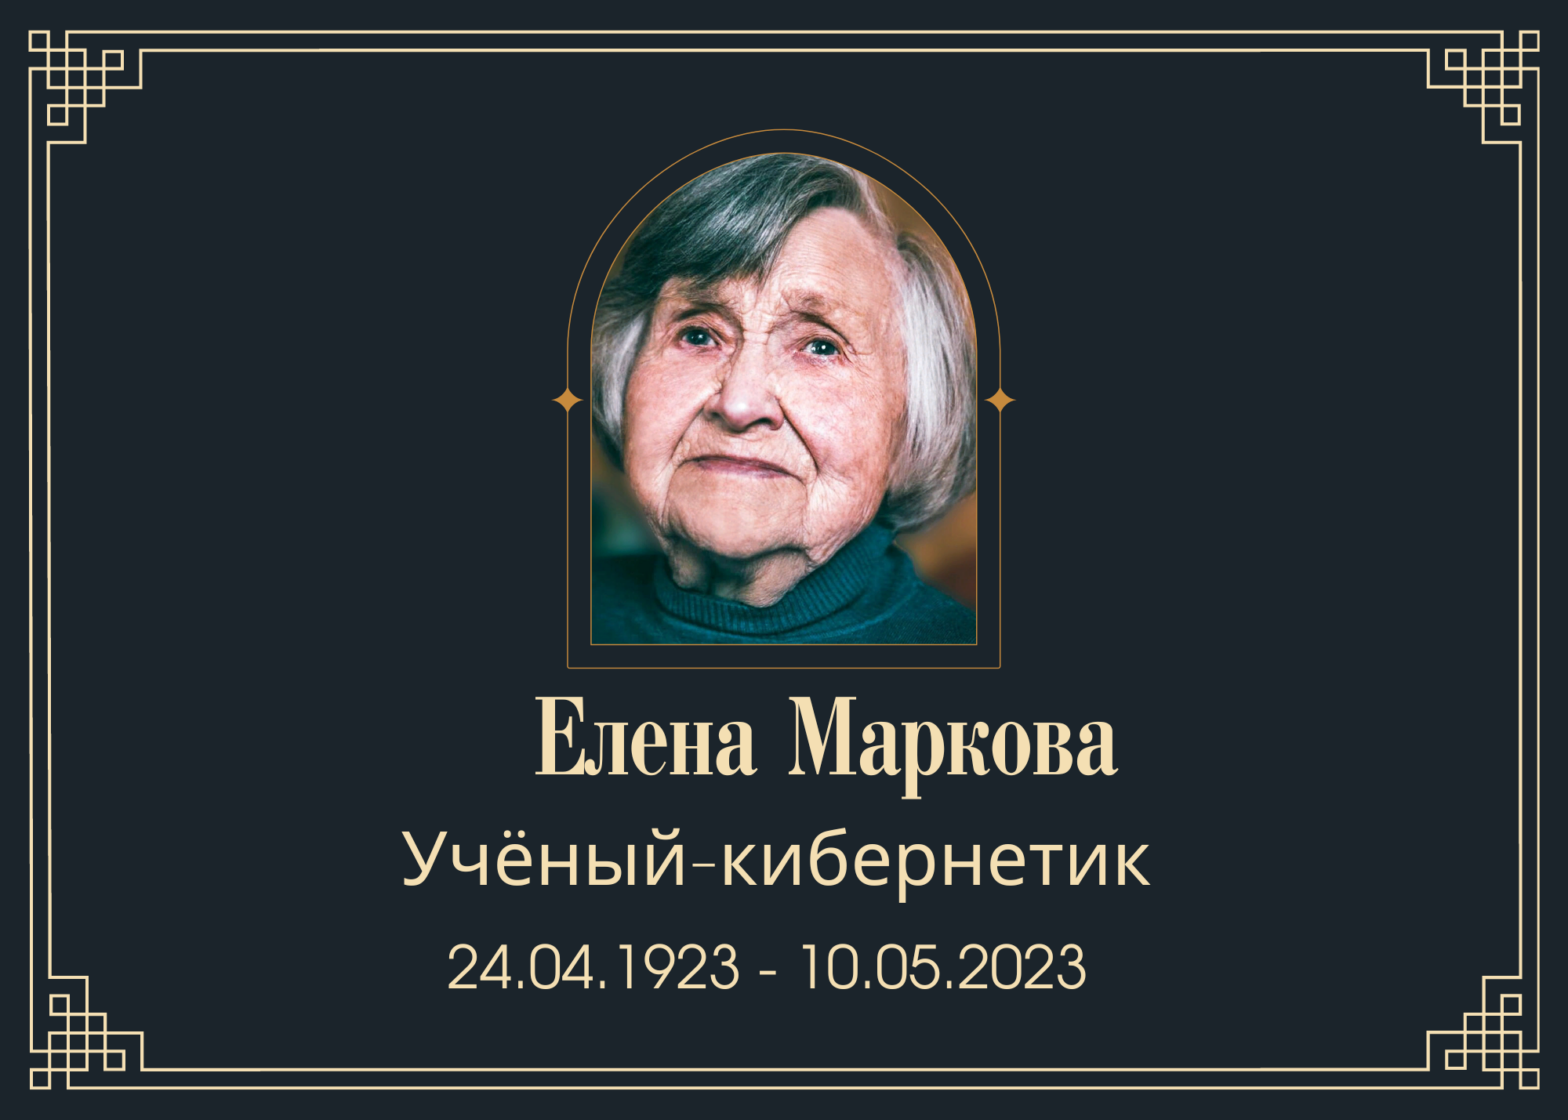 Умерла учёный-кибернетик Елена Маркова